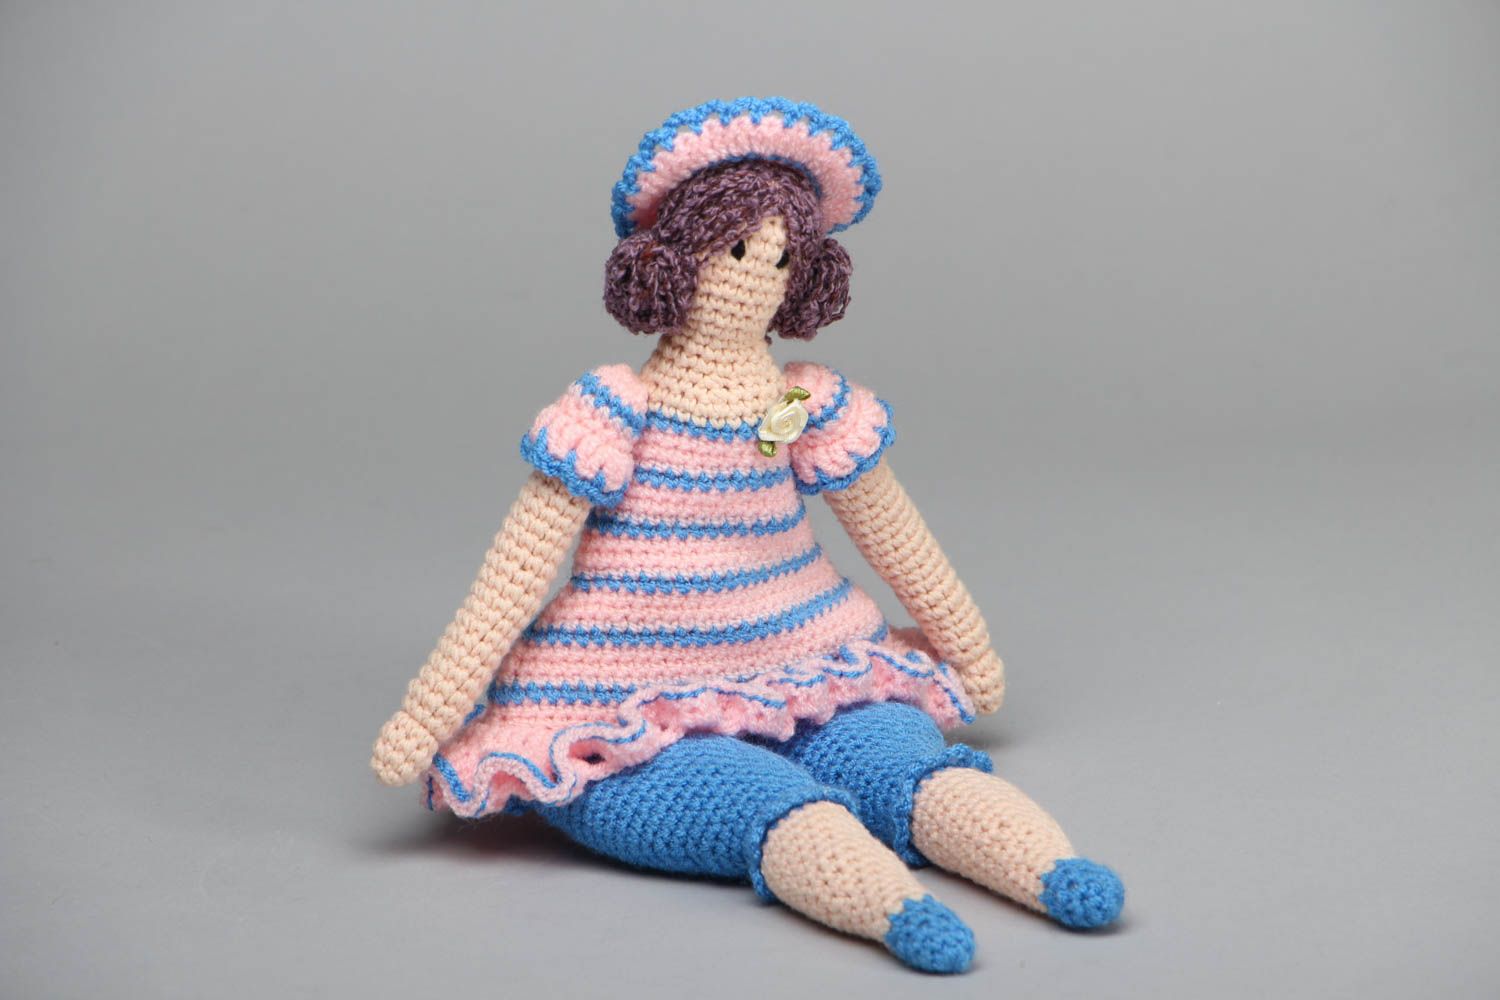 Crochet doll in hat photo 1